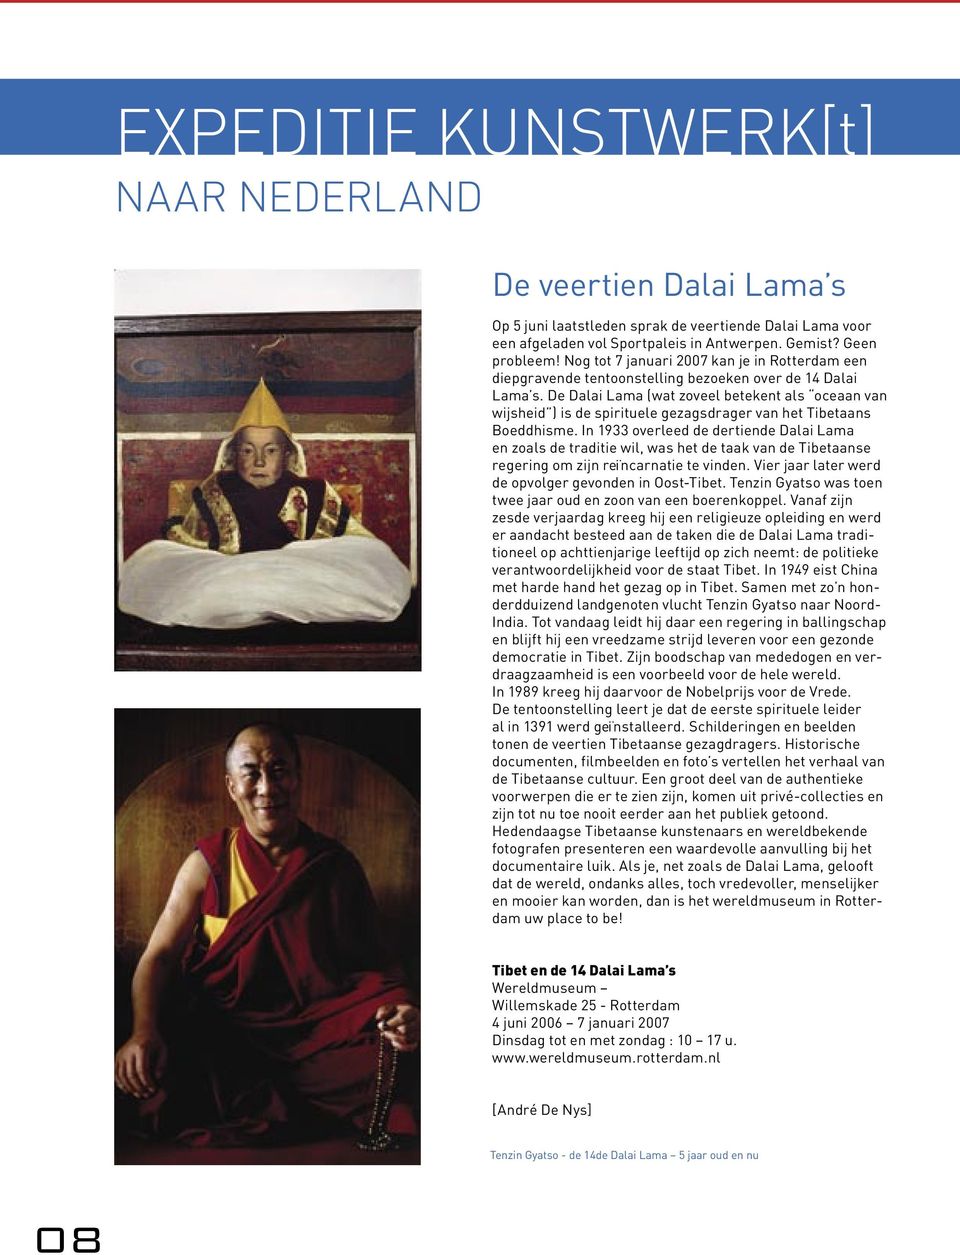 De Dalai Lama (wat zoveel betekent als oceaan van wijsheid ) is de spirituele gezagsdrager van het Tibetaans Boeddhisme.